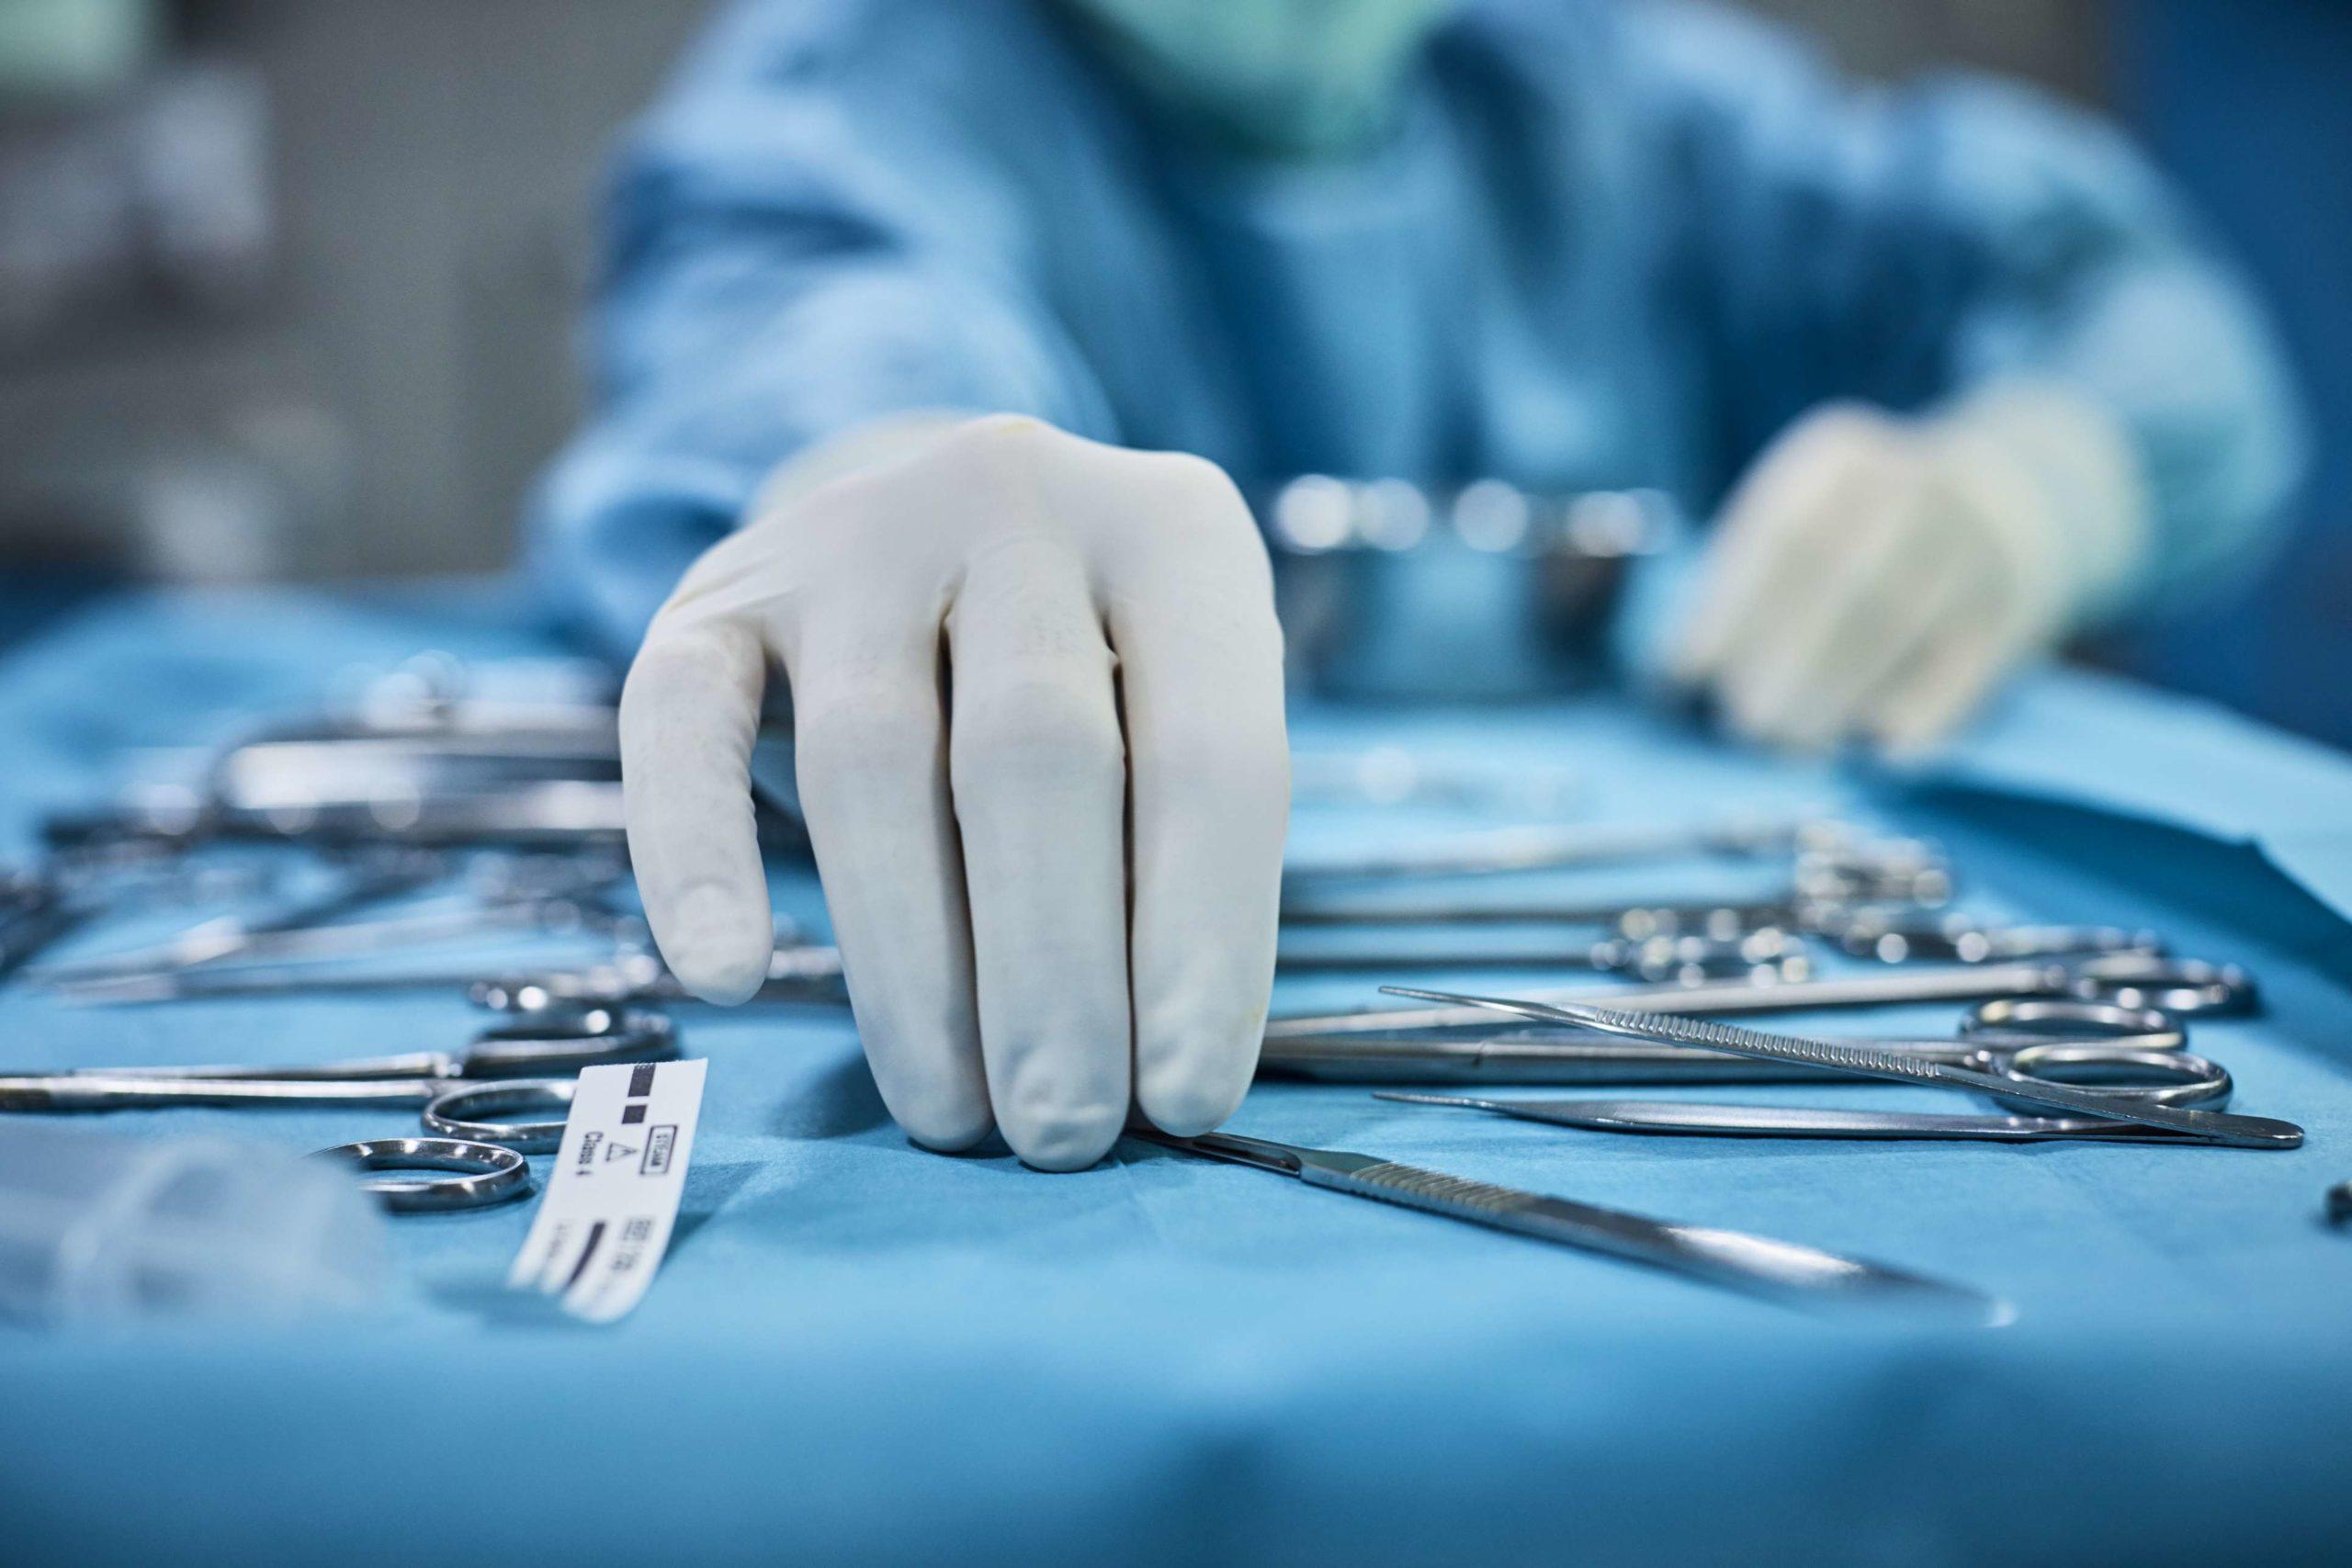 Chirurg nimmt chirurgisches Werkzeug vom Tablett auf. Chirurg bereitet sich im Operationssaal auf die Operation vor. Er befindet sich in einem Krankenhaus.